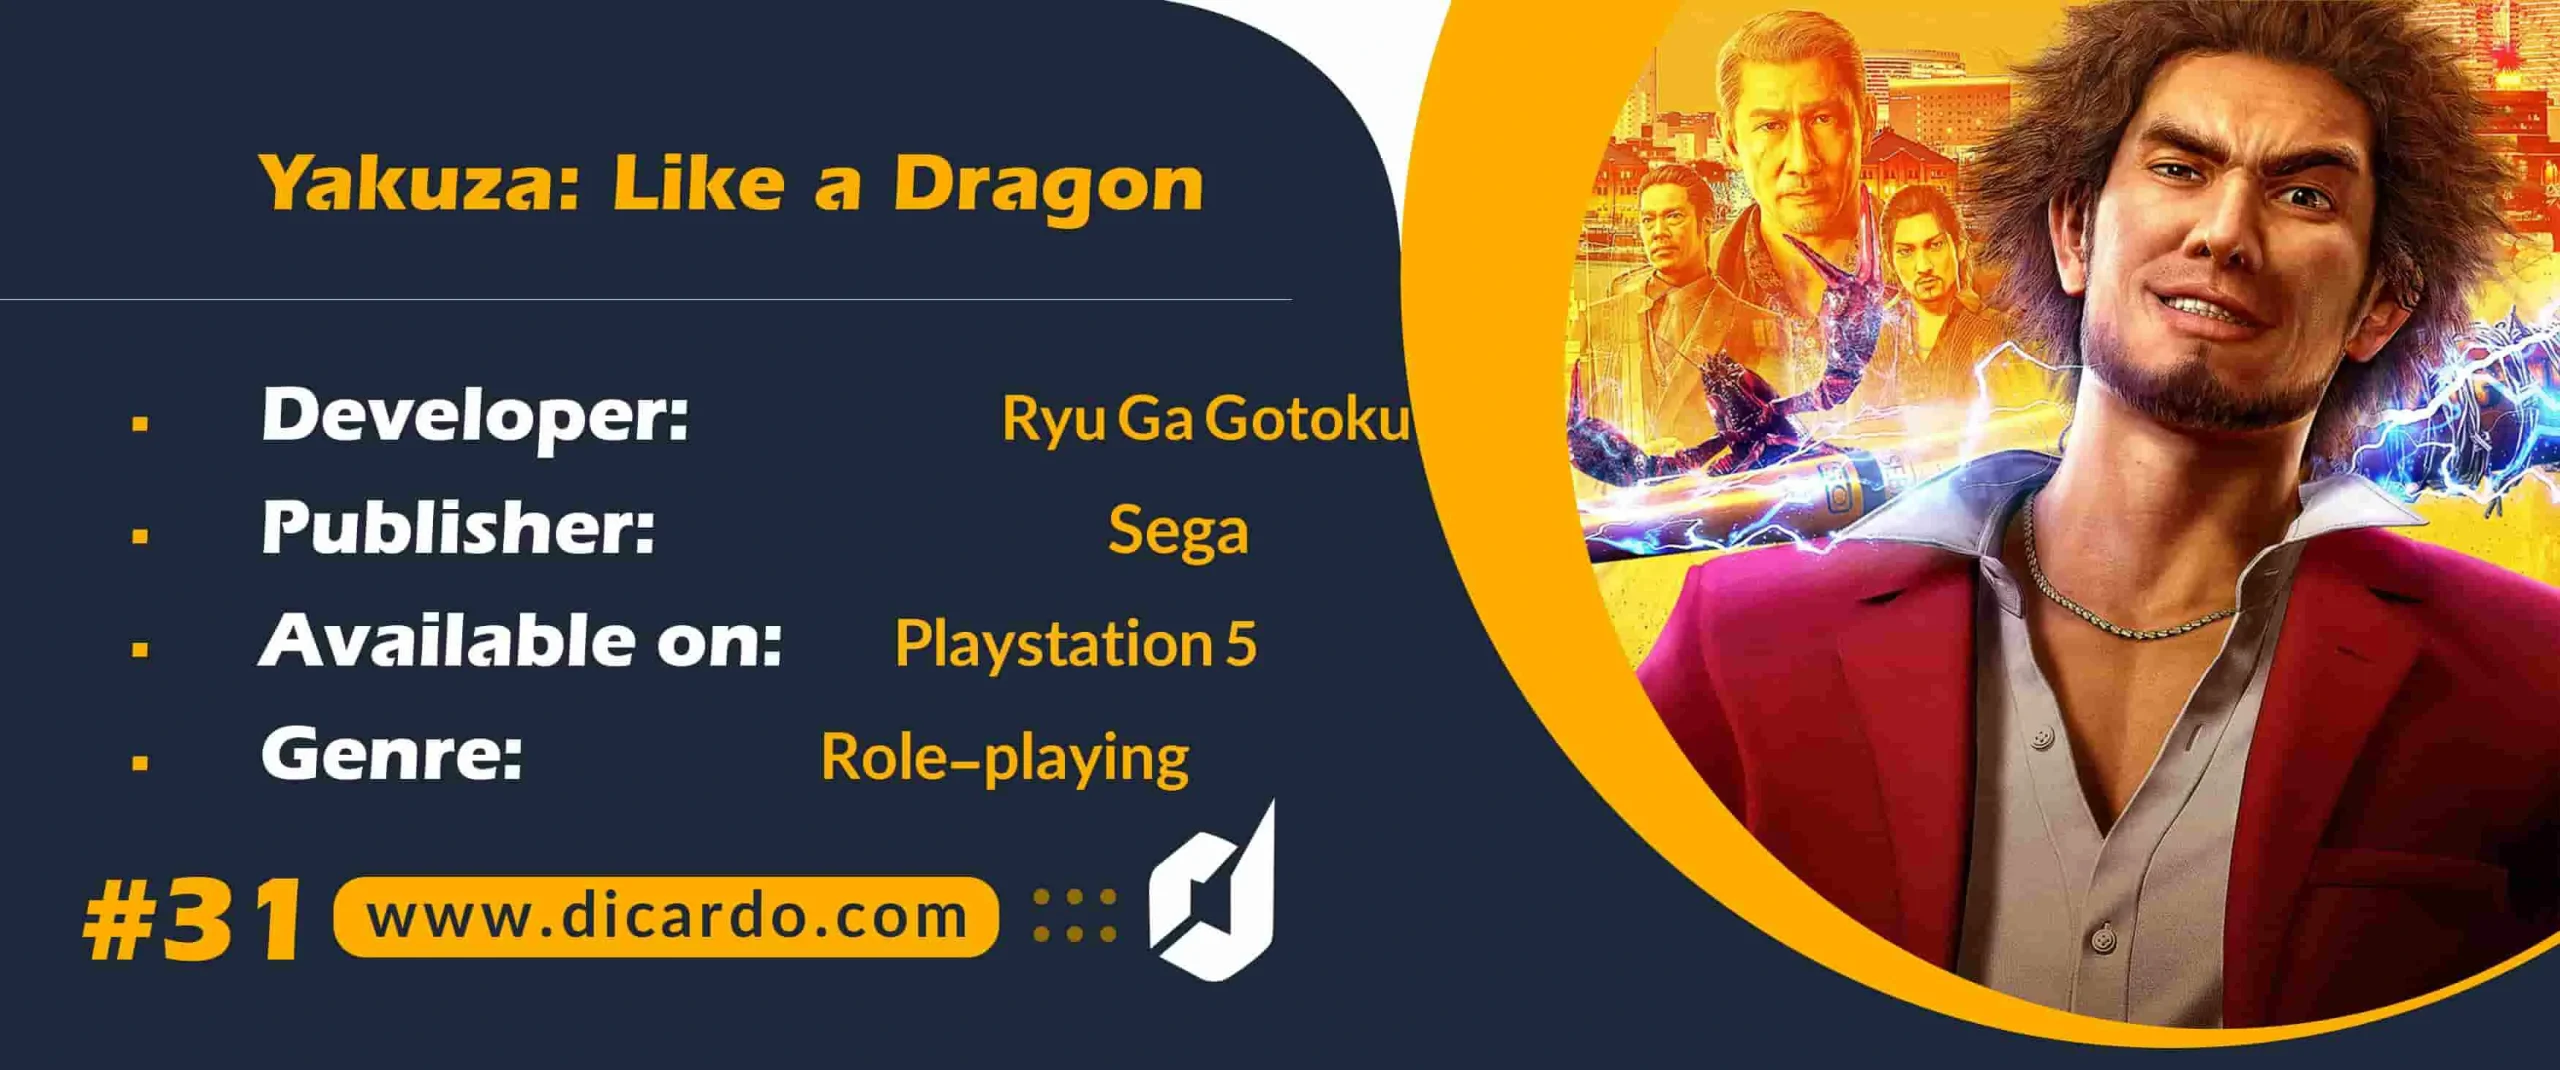 #31 یاکوزا لایک ا دراگون Yakuza: Like a Dragon